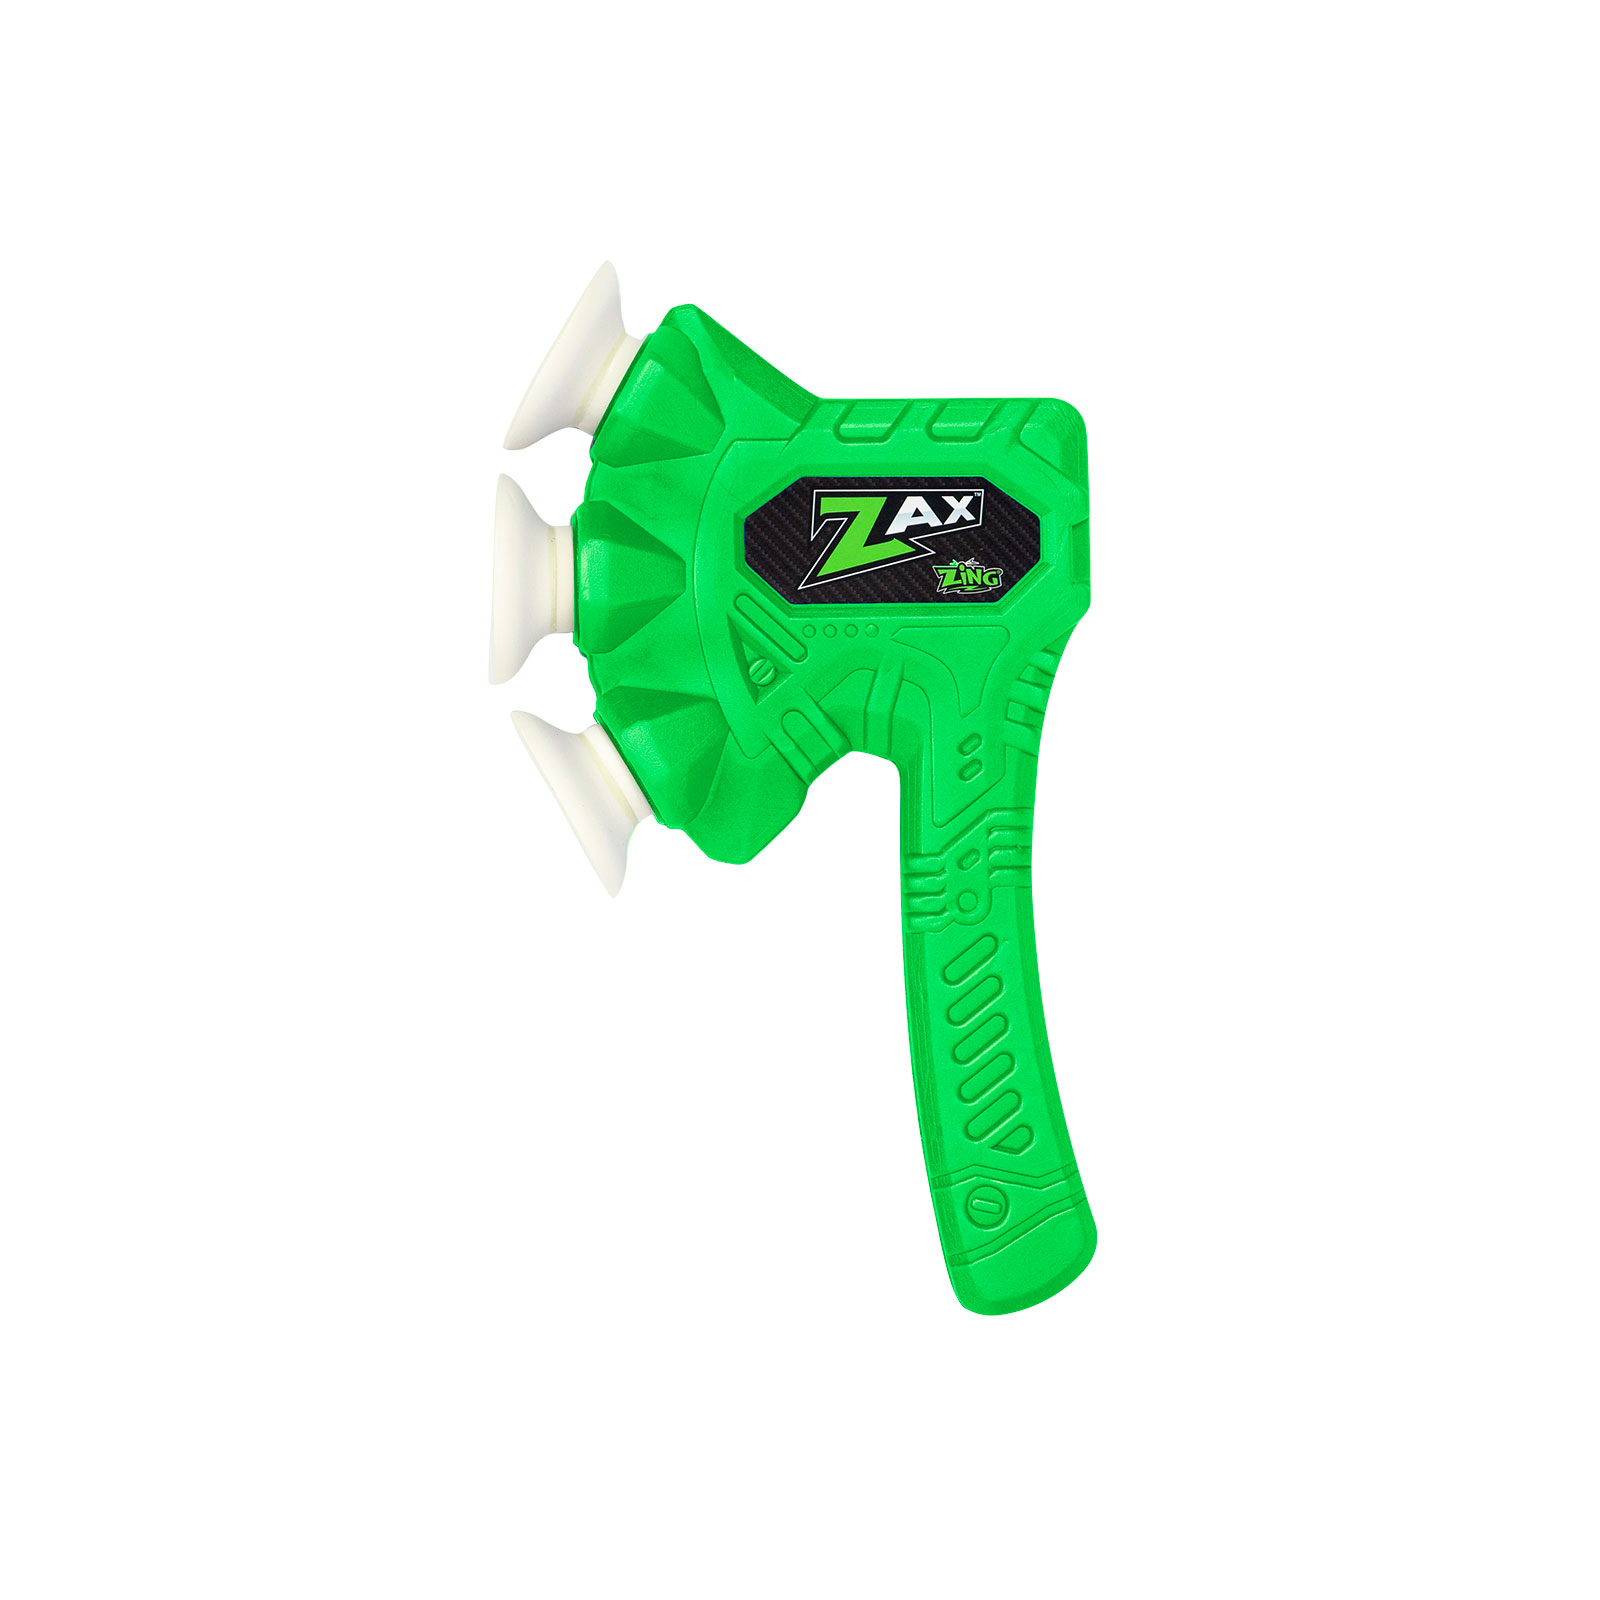 Игрушечное оружие Zing топор Air Storm - Zax зеленый (ZG508G)